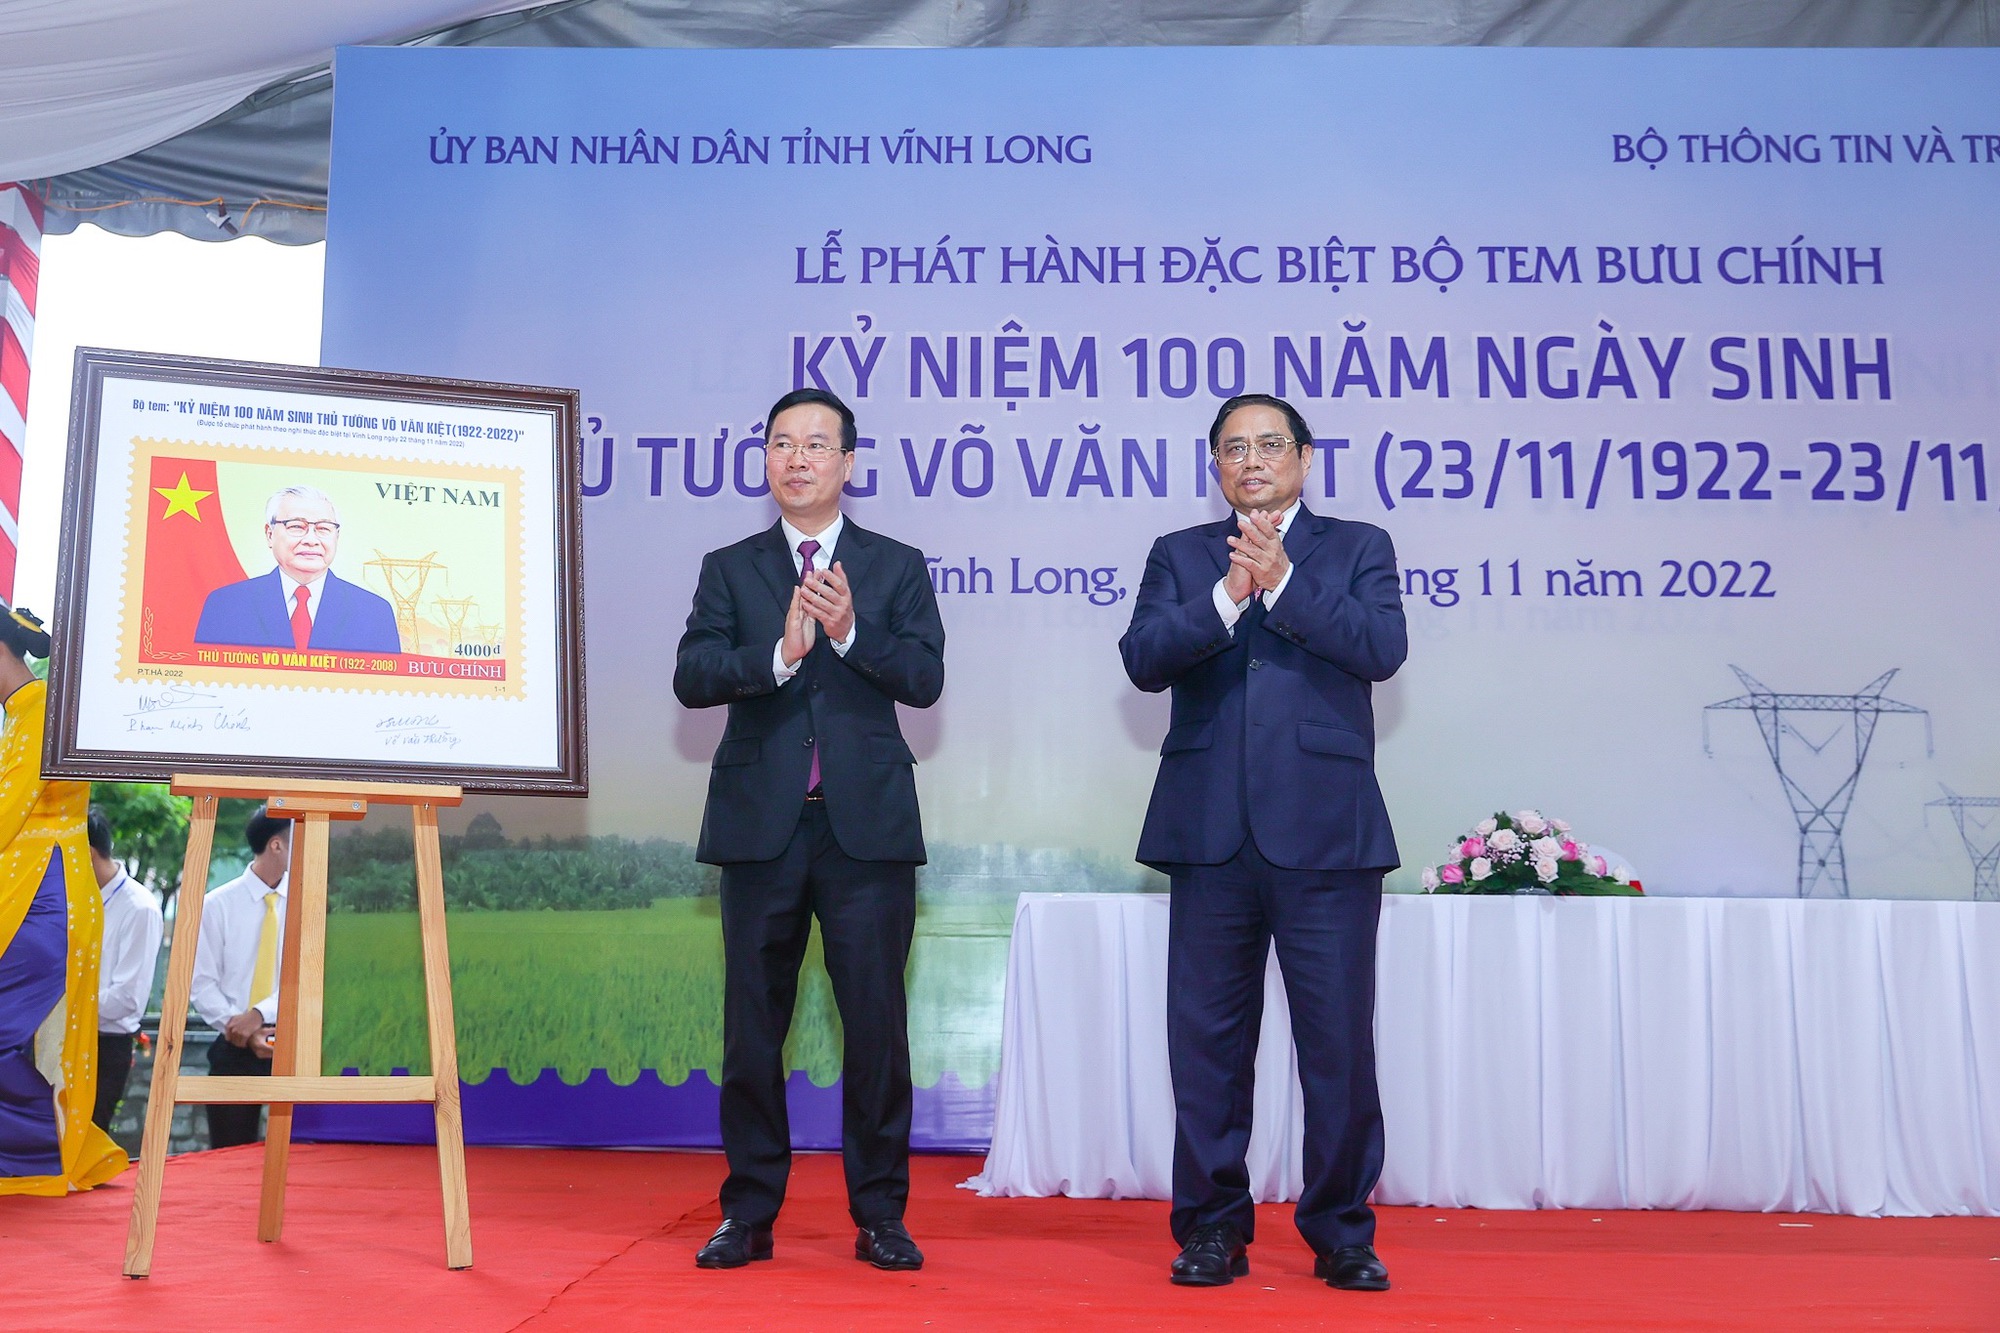 Thủ tướng Phạm Minh Chính dự các hoạt động kỷ niệm 100 năm Ngày sinh đồng chí Võ Văn Kiệt - Ảnh 4.